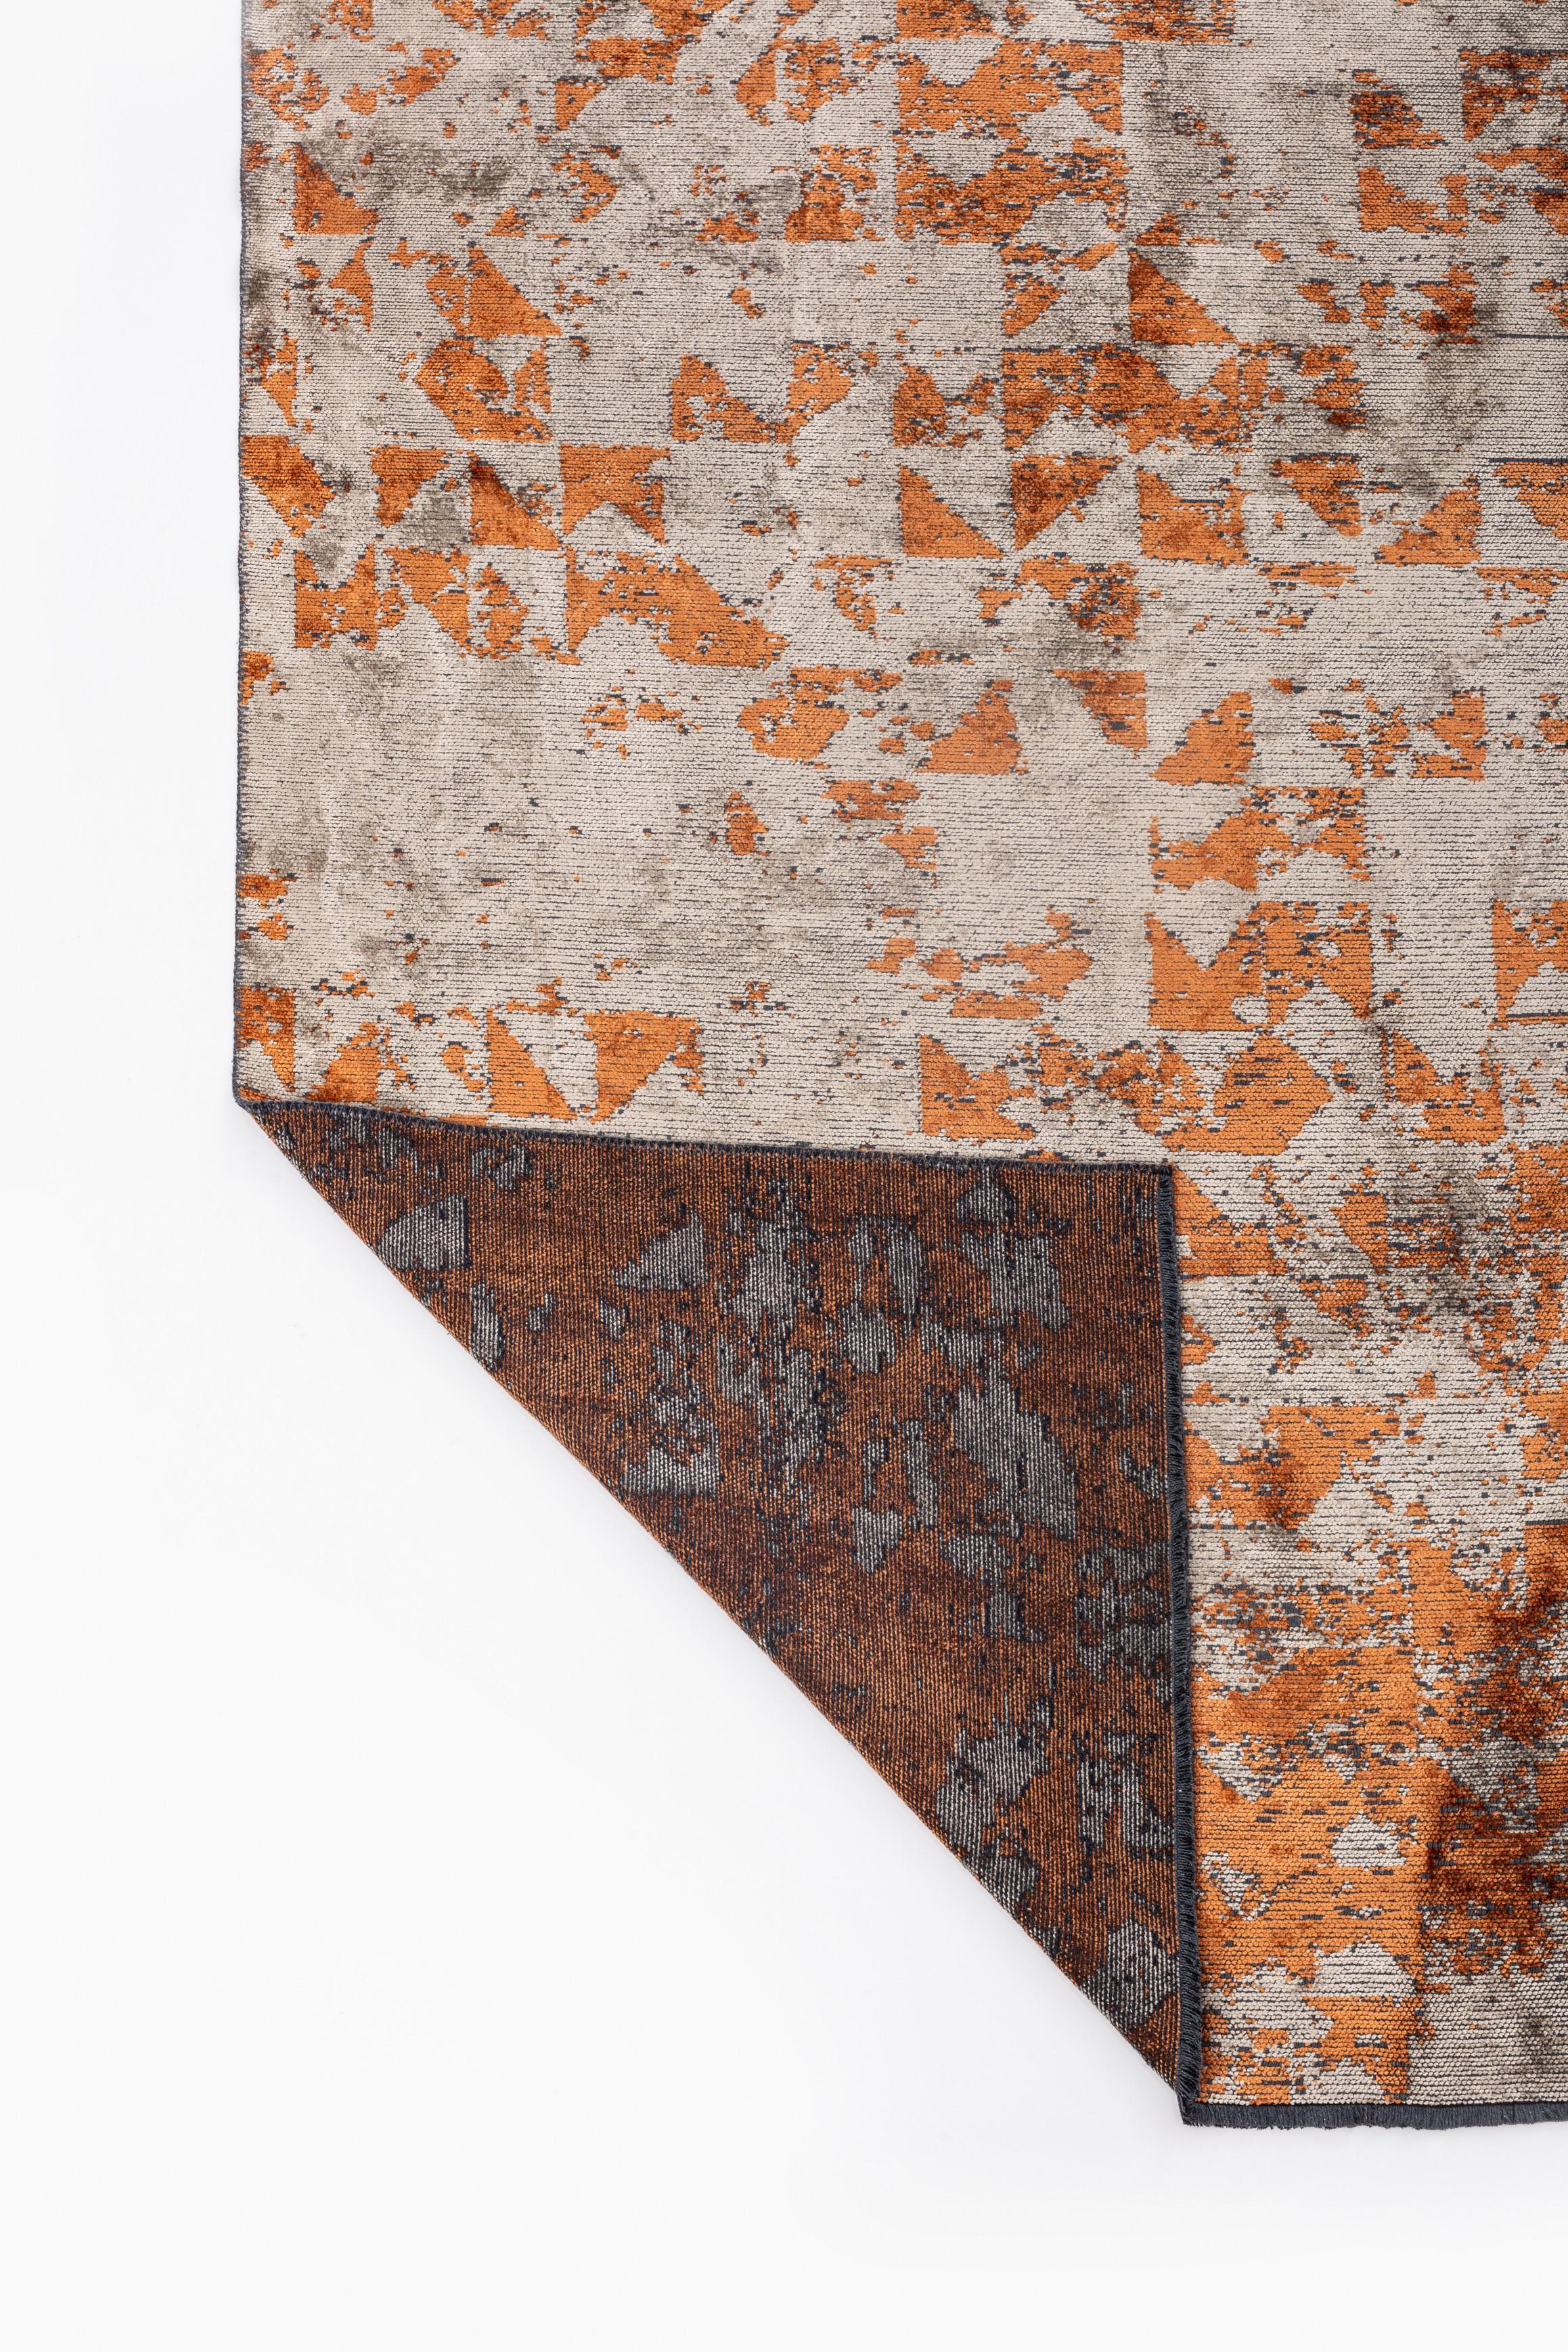 Im Angebot: Modern Camouflage Luxury Hand-Finished Area Rug,  (Orange) 3